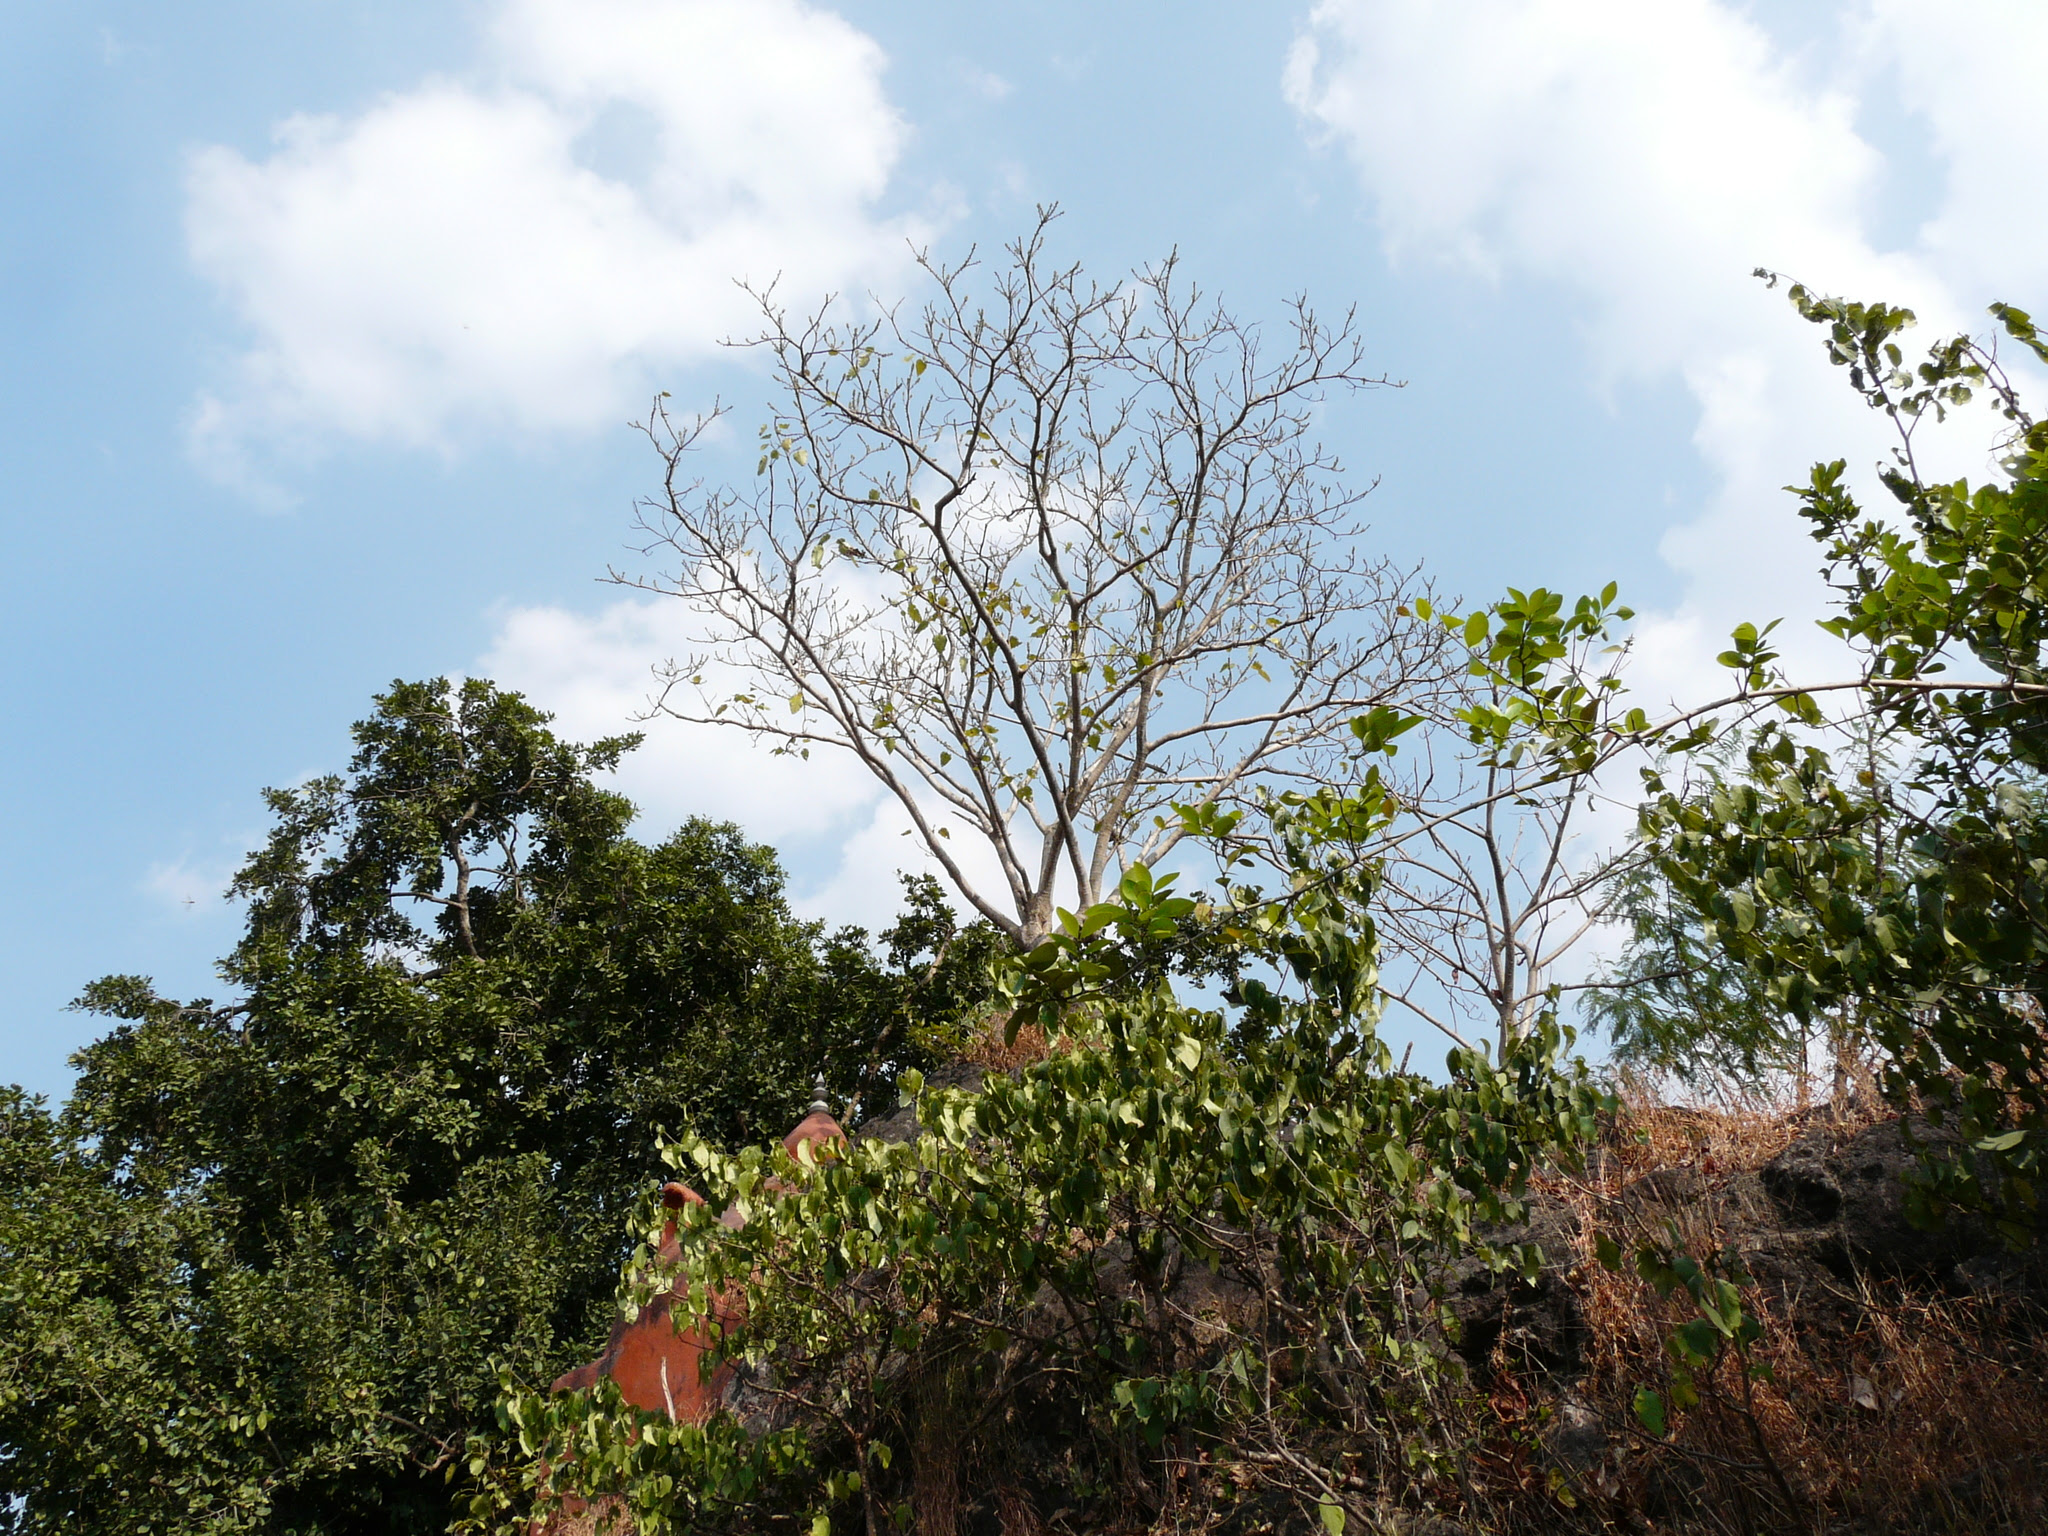 Ficus arnottiana (Miq.) Miq.